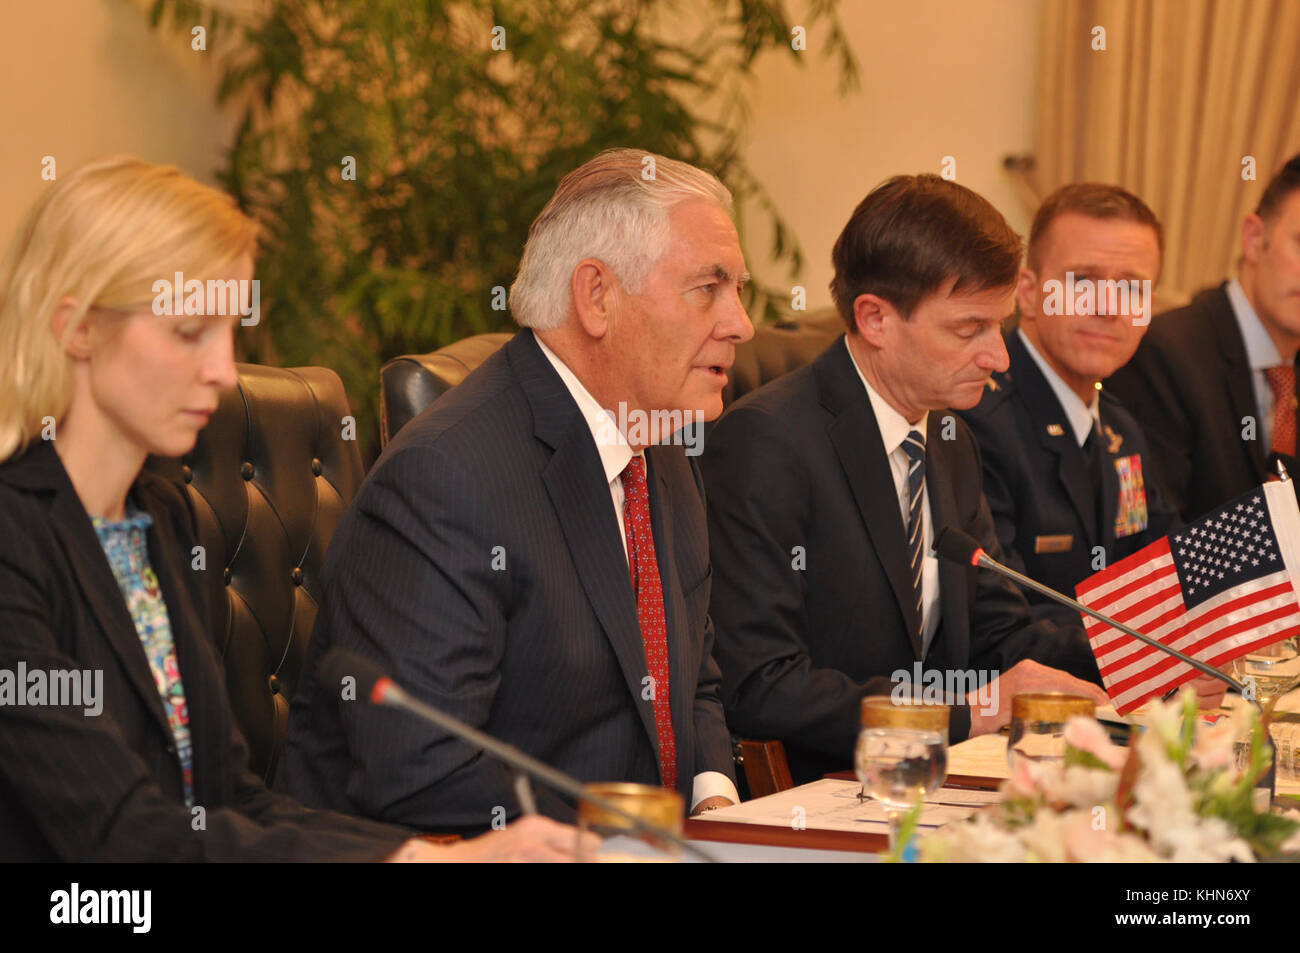 El Secretario de Estado de Estados Unidos, Tillerson, flanqueado por su delegación participar en una reunión bilateral con el Primer Ministro paquistaní Shahid Khaqan Abbasi y el Gobierno paquistaní de representantes en la casa del Primer Ministro en Islamabad, Pakistán, 24 de octubre de 2017. Foto de stock